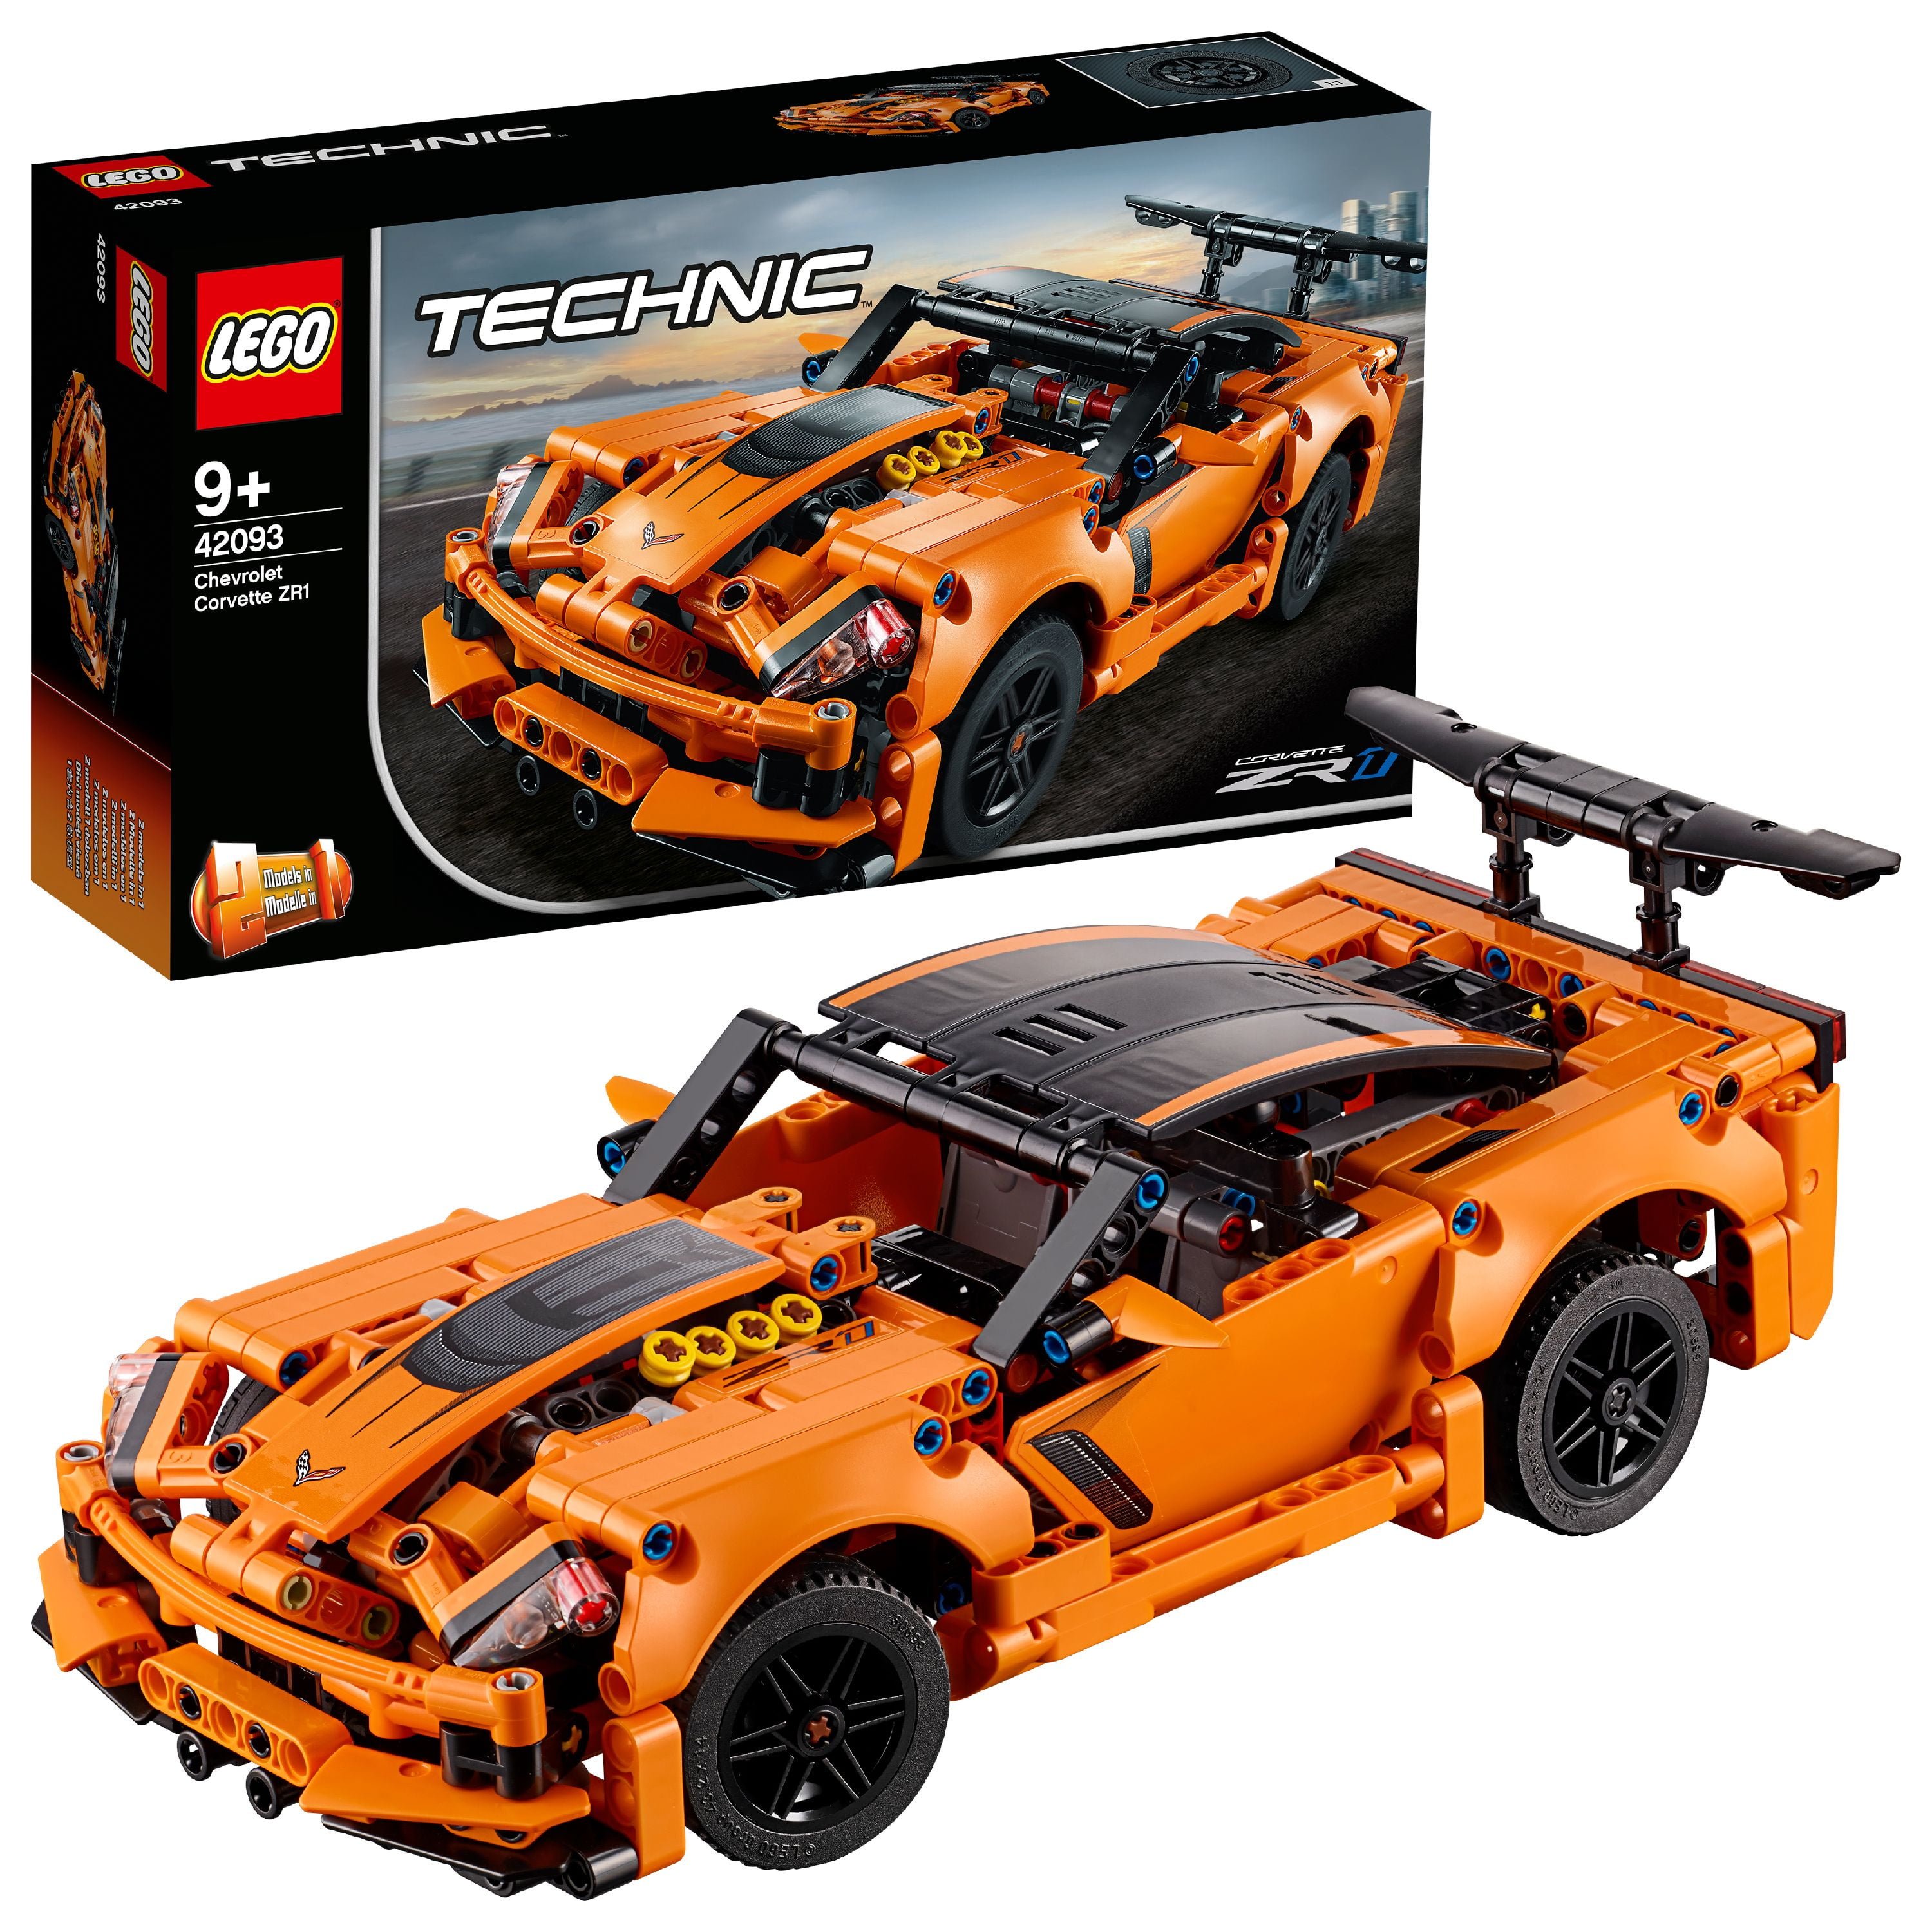 4211567 6 X Nouveau LEGO Technic Axe & broches du connecteur coudé #2-180 degrés No